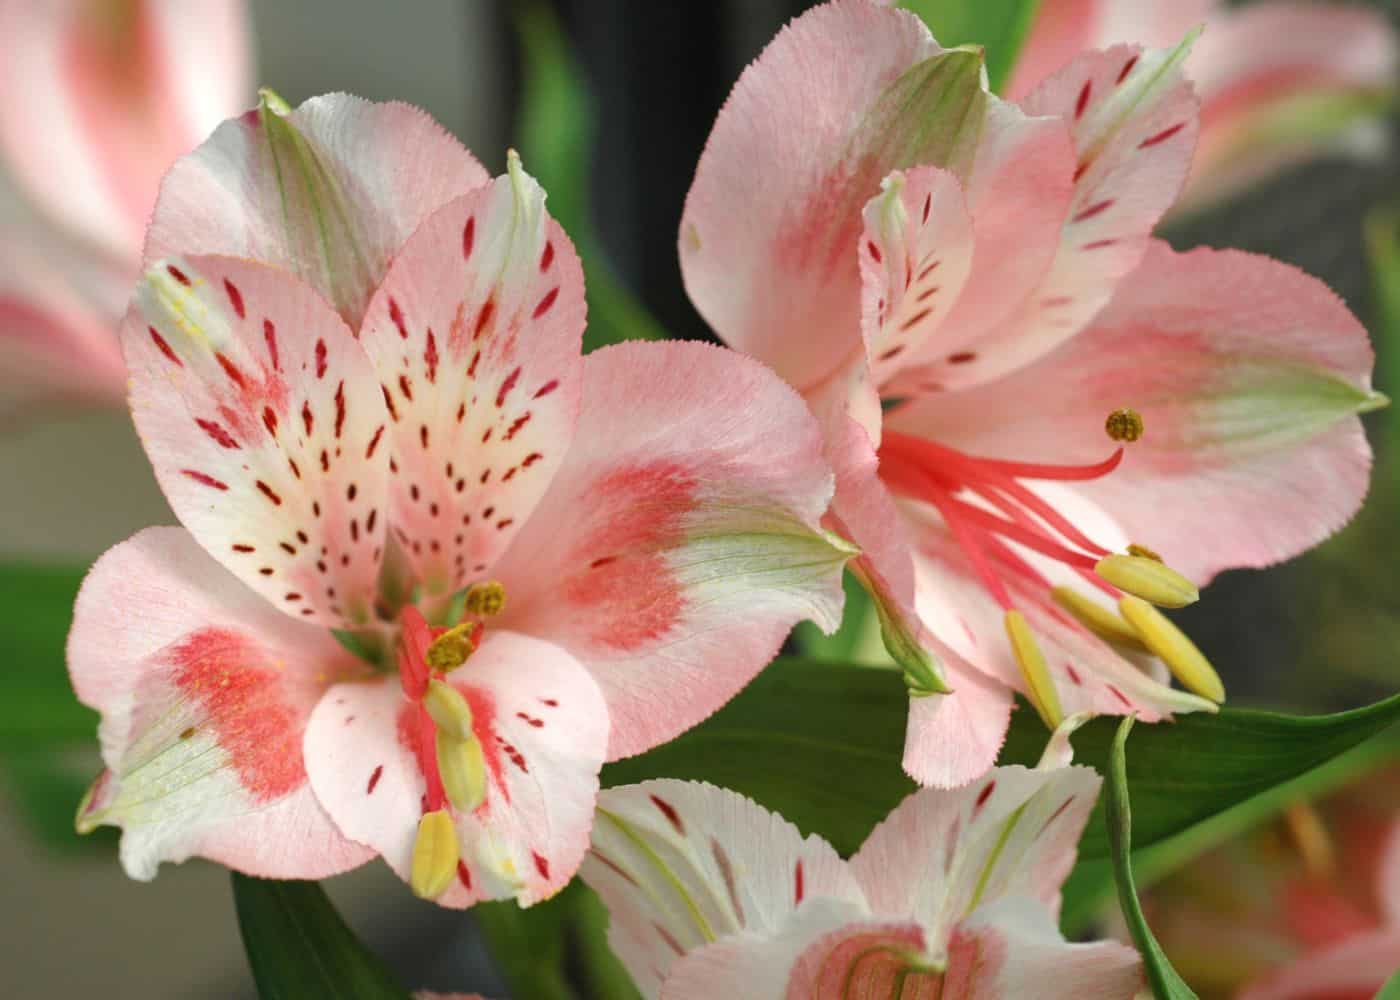 Blush peruvian lily flowers